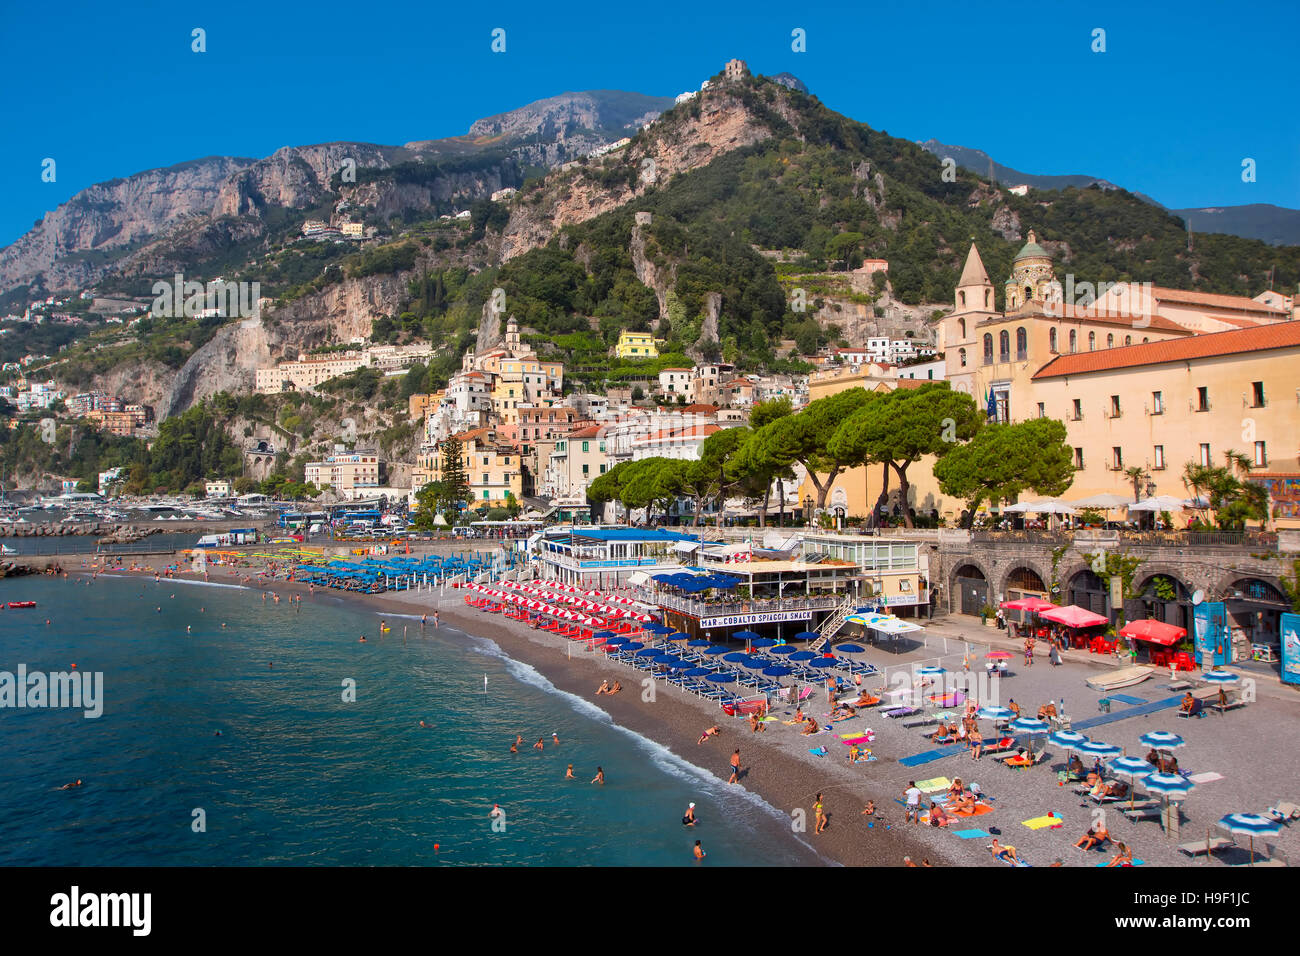 La playa de Amalfi, Campania, Italia Foto de stock